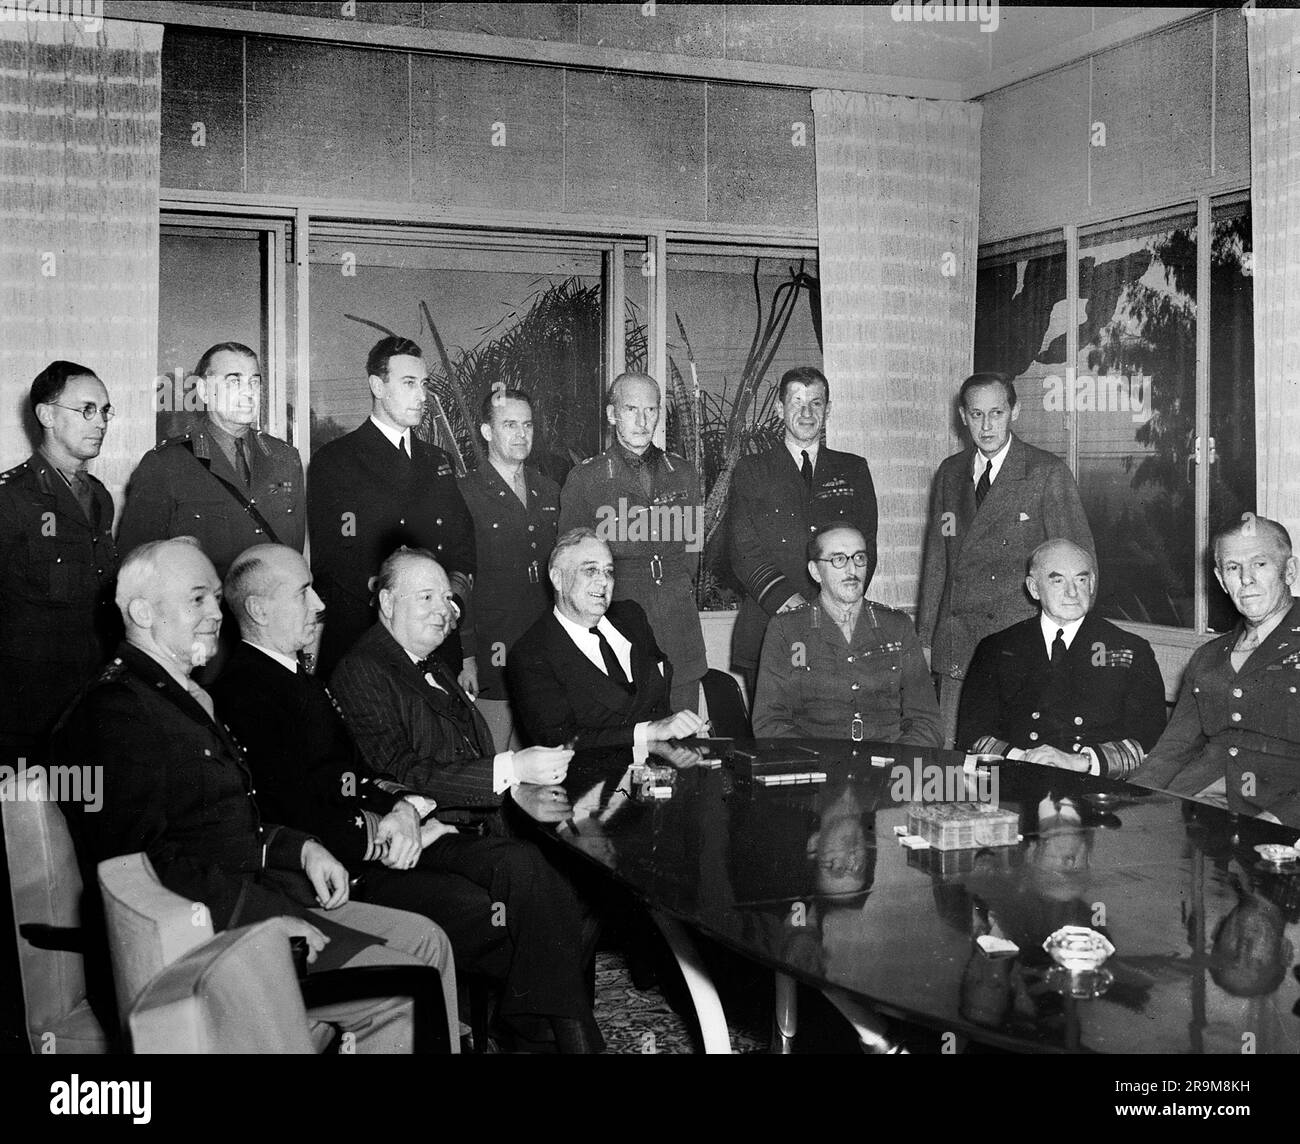 Le premier ministre britannique Winston Churchill (assis troisième à partir de la gauche), États-Unis Le président Franklin D. Roosevelt (4th de gauche), et le général Sir Alan Brooke (5th de gauche) avec d'autres chefs militaires en conférence pendant la Seconde Guerre mondiale, Casablanca, Maroc, États-Unis Corps des transmissions de l'armée, janvier 1943 Banque D'Images